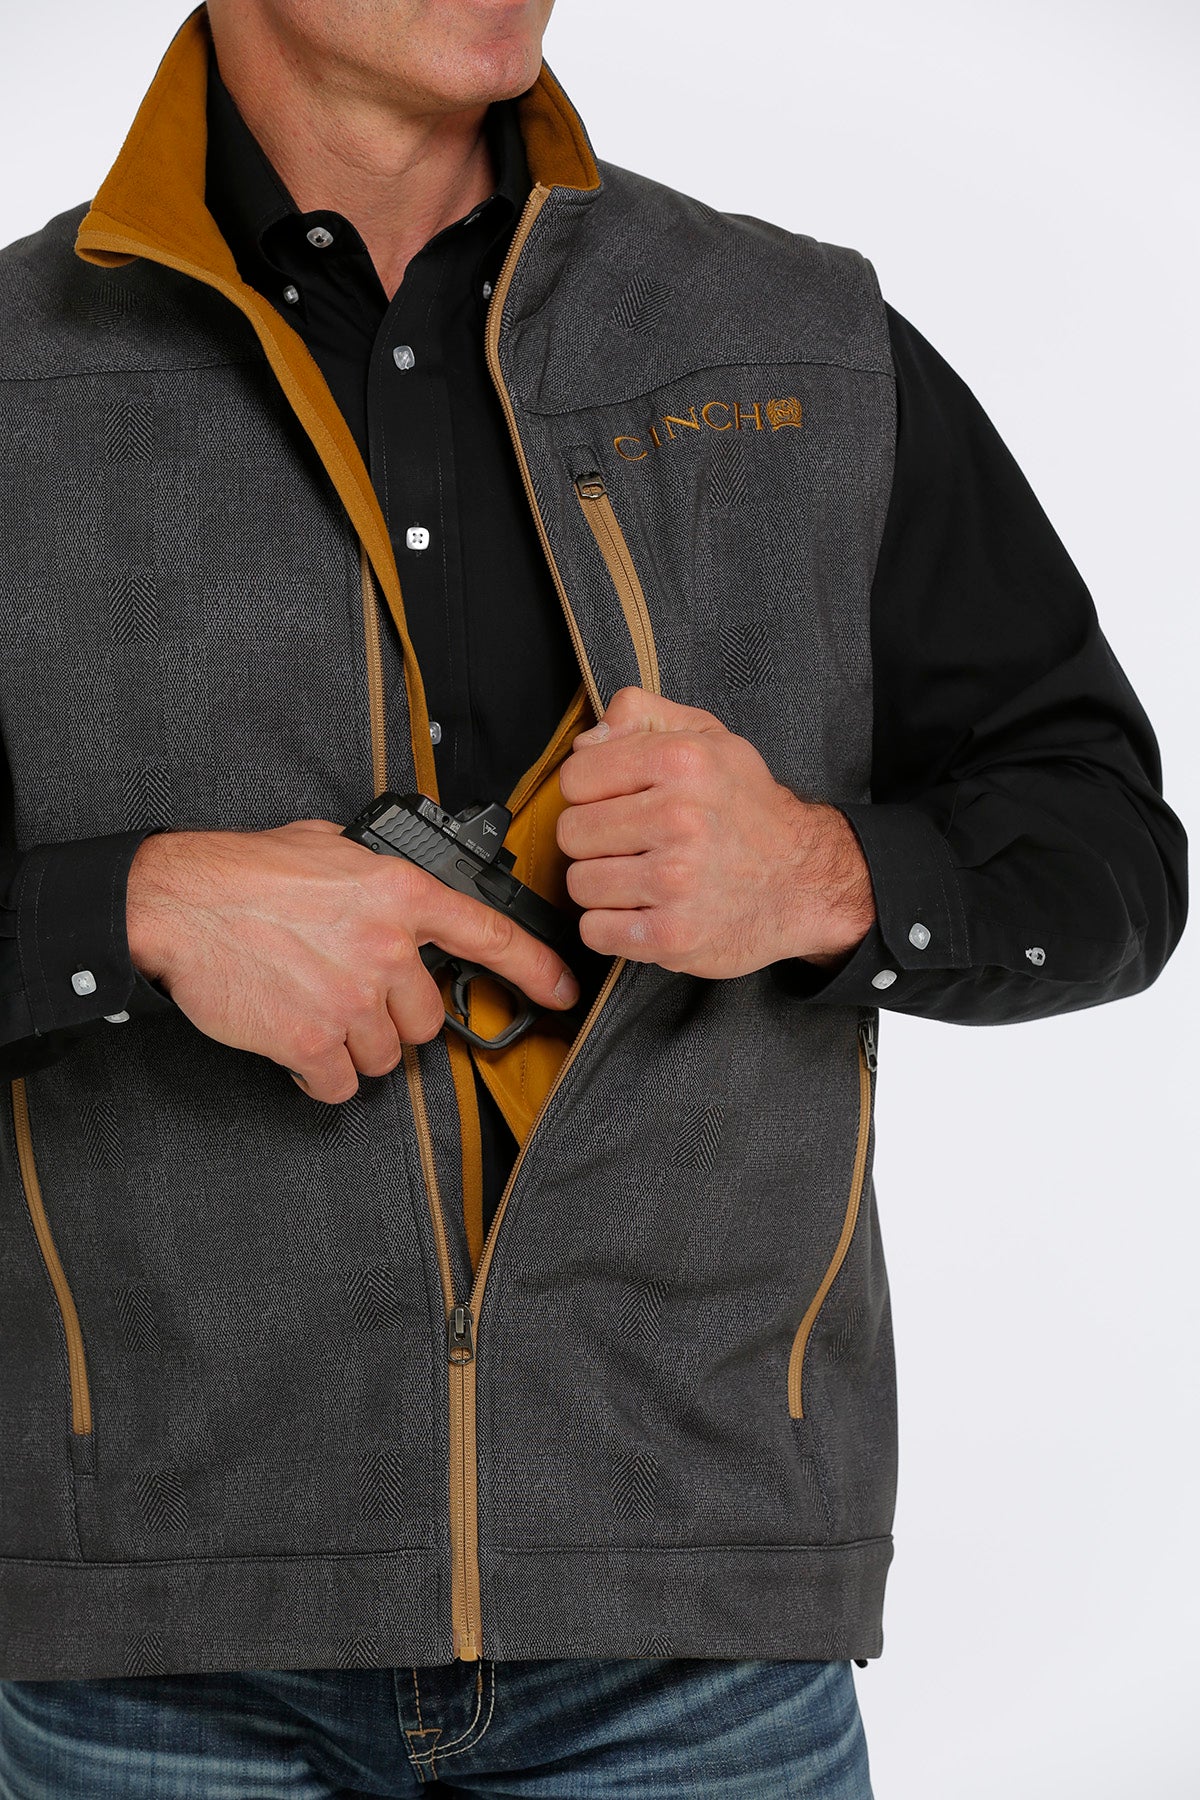 'Cinch' Men's Concealed Carry Bonded Vest - Charcoal